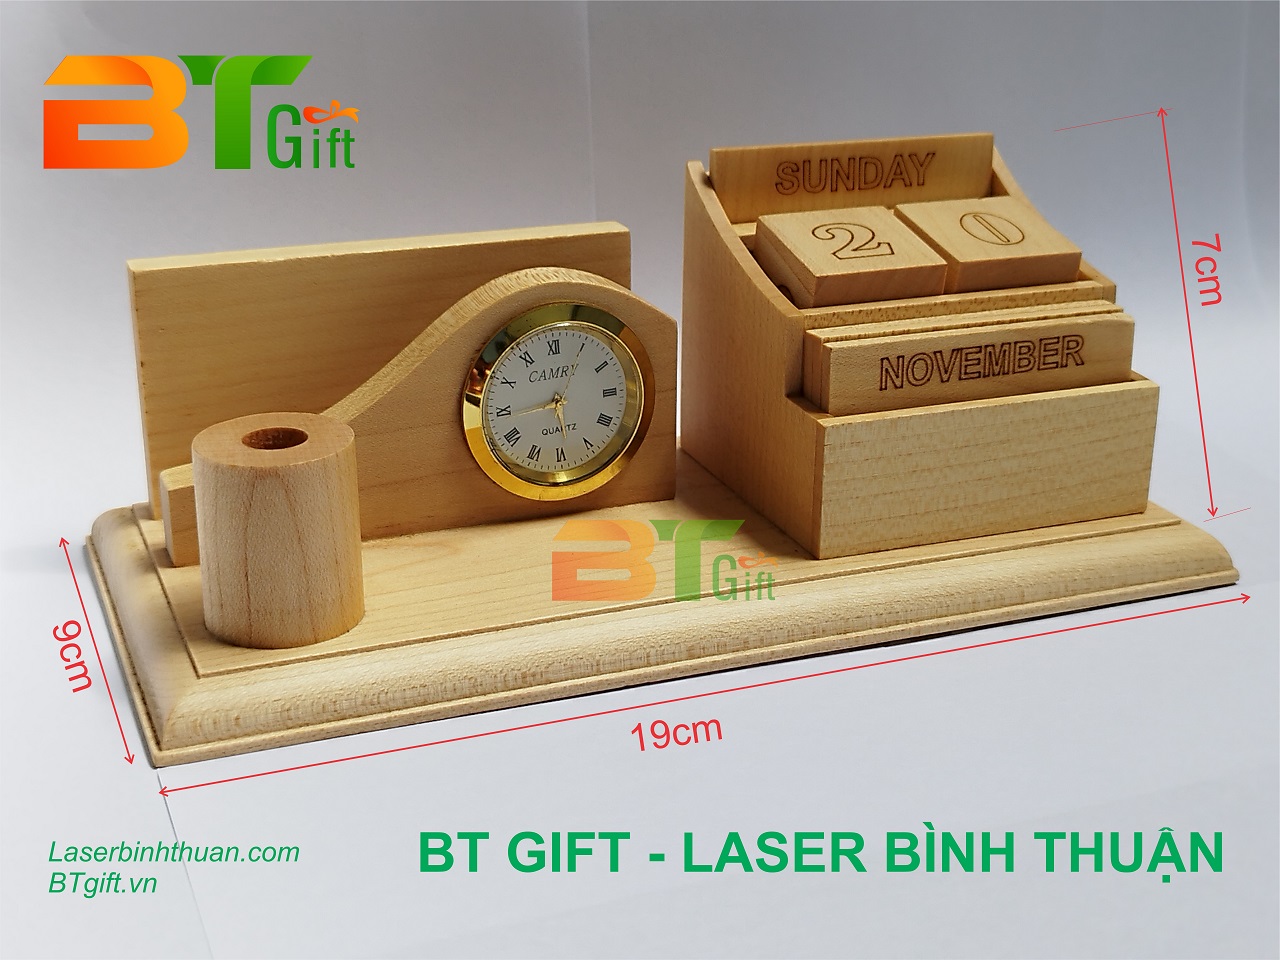 Cắm bút gỗ để bàn ( mẫu 3) có đồng hồ | BT GIIFT